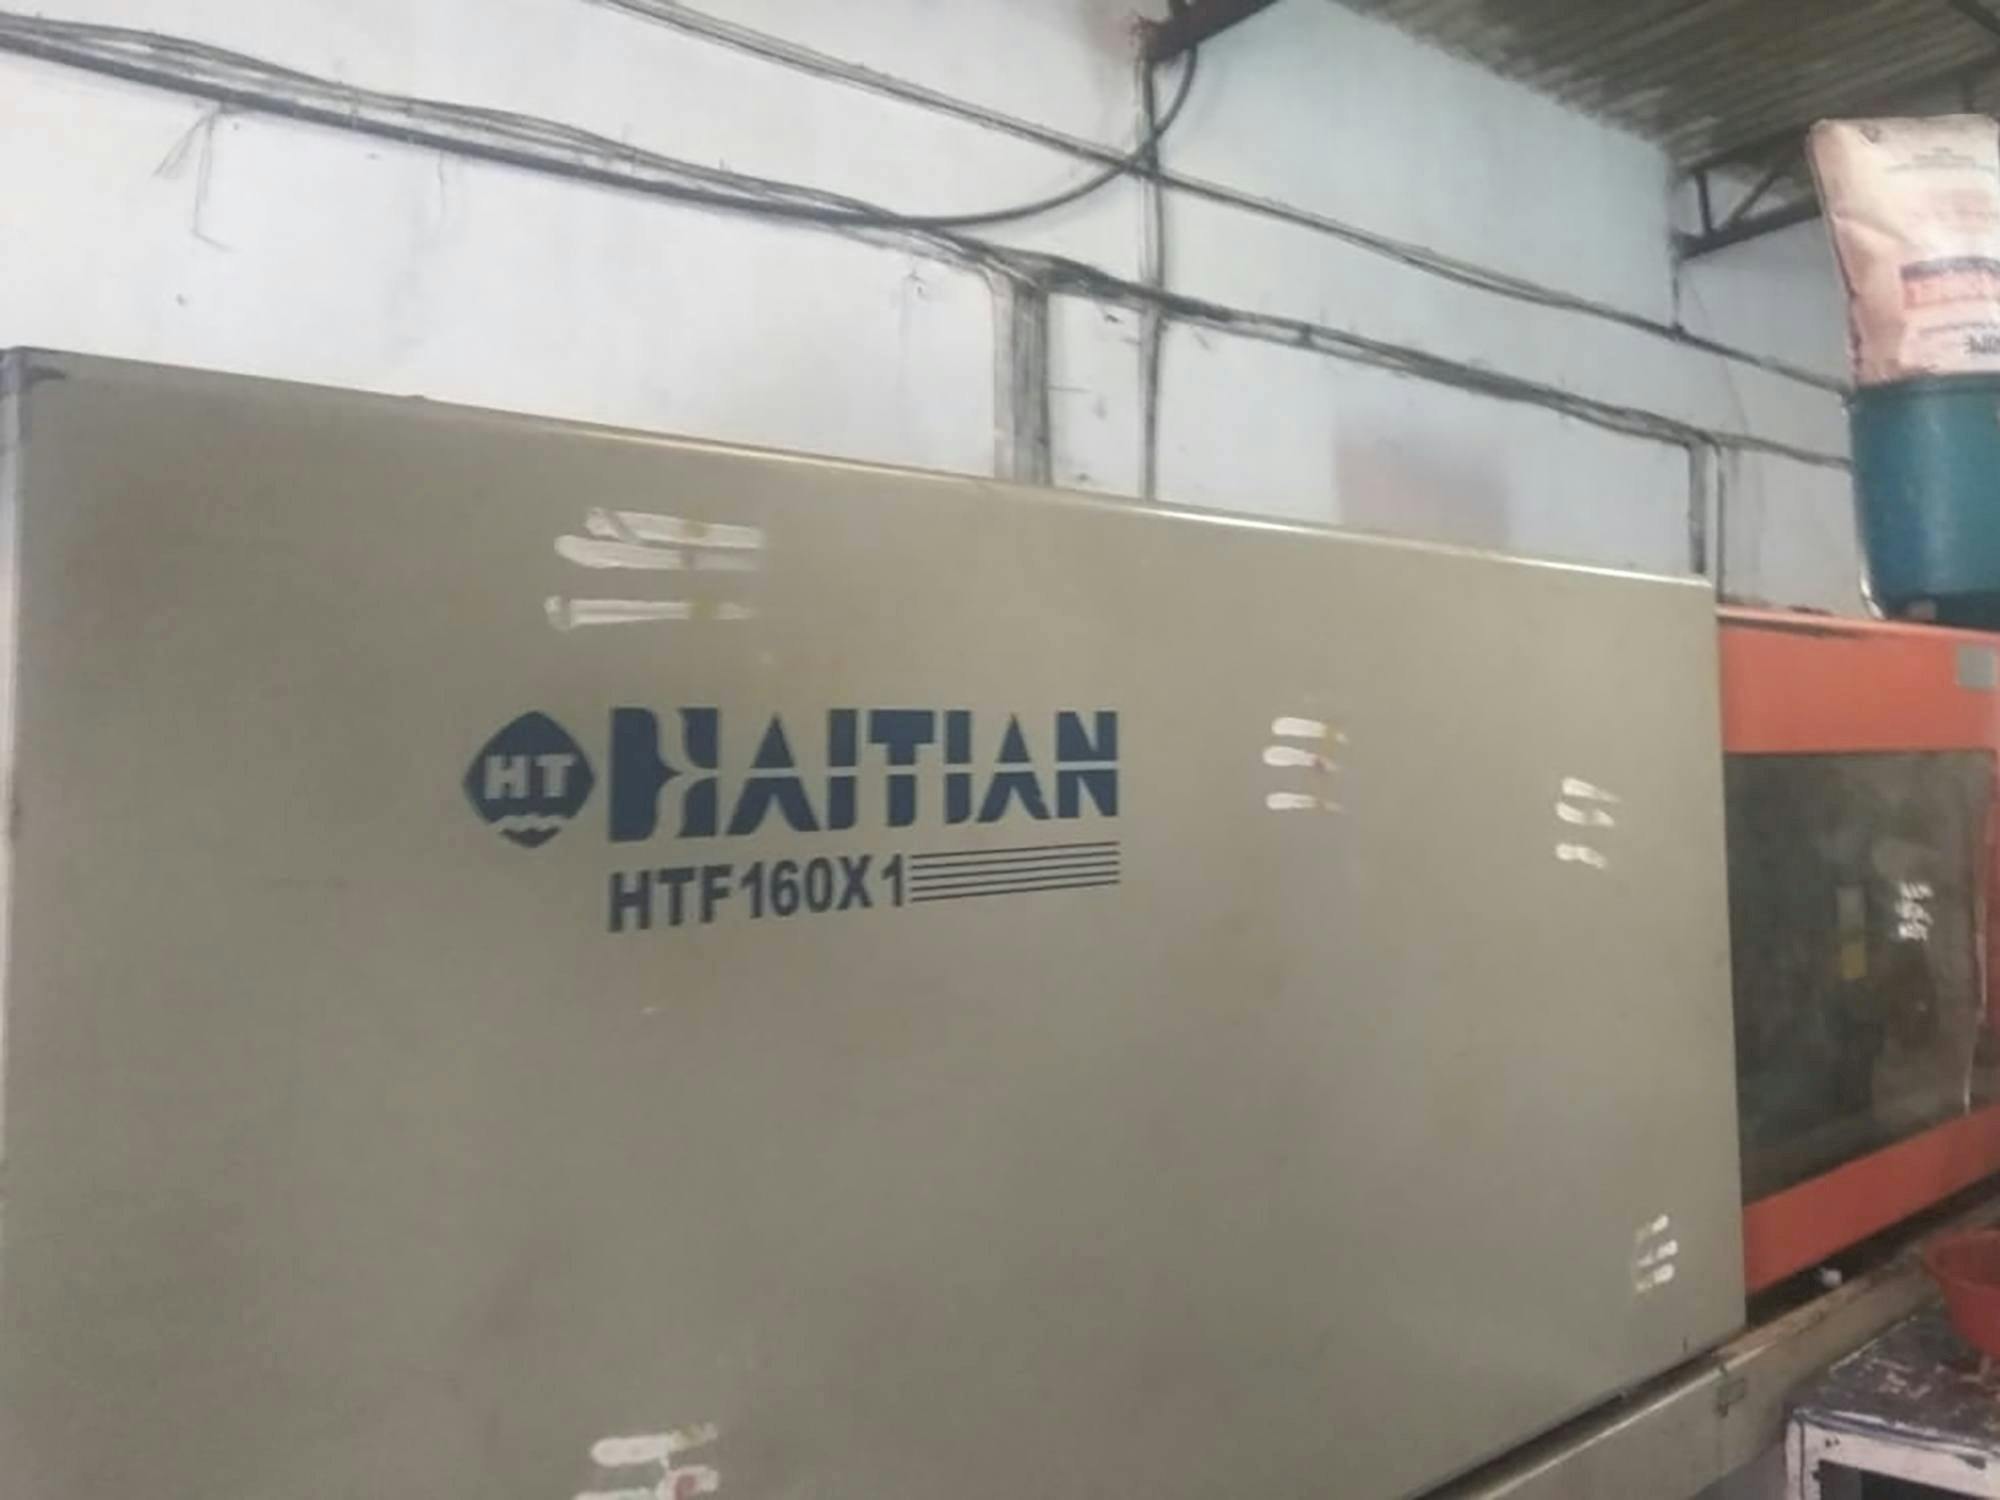 Frontansicht der HAITIAN HTF160X1 Maschine